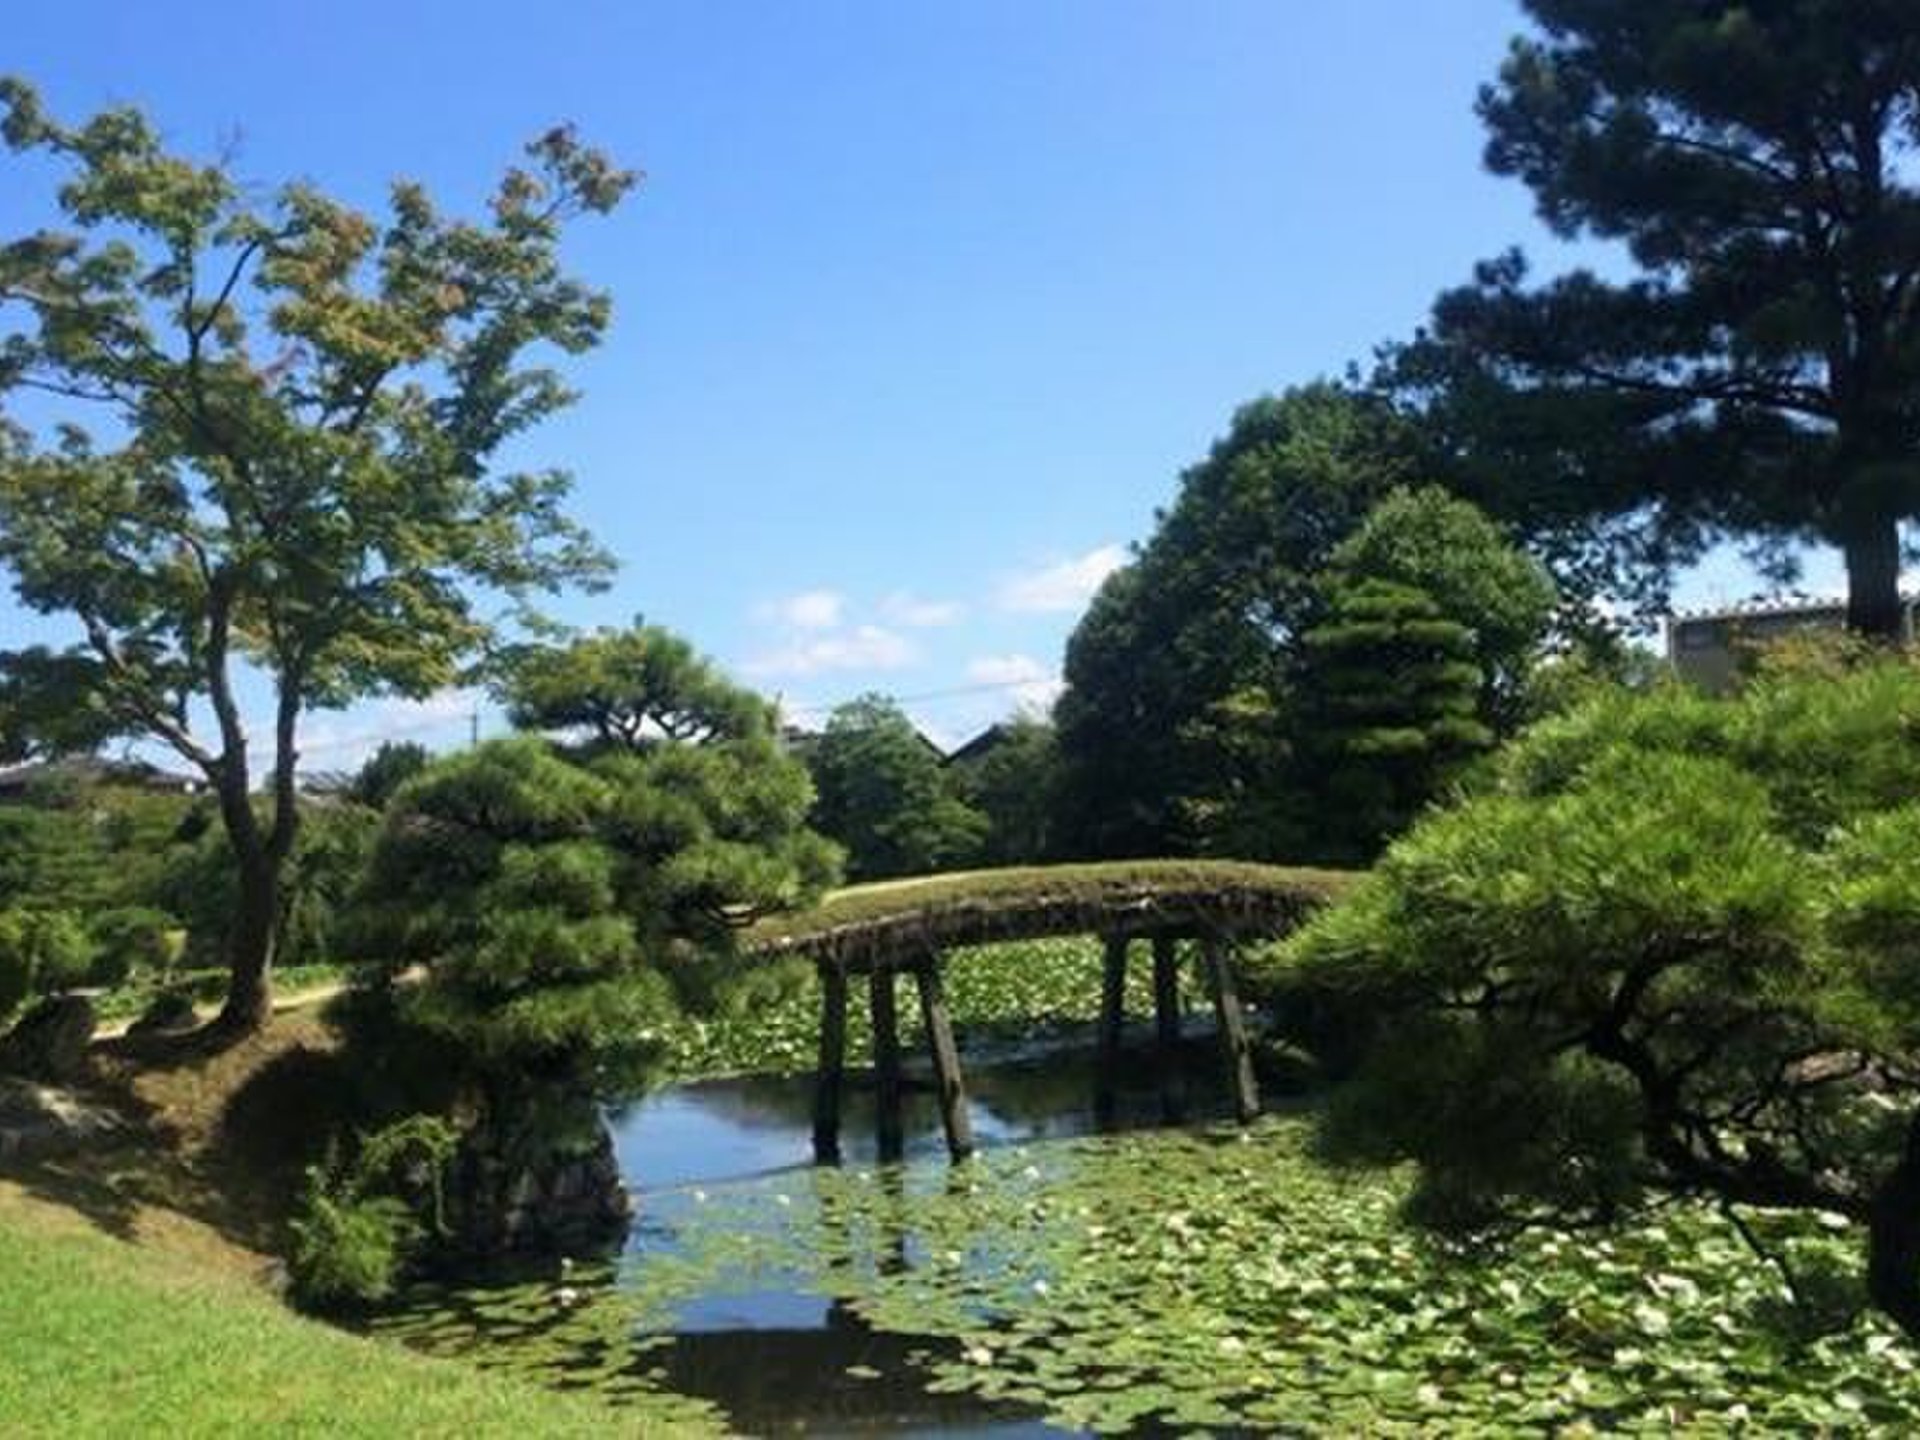 春は桜、秋は紅葉、冬は雪と四季を楽しむ観光地！岡山・津山の大名庭園「衆楽園」夏は池に広がるスイレン。